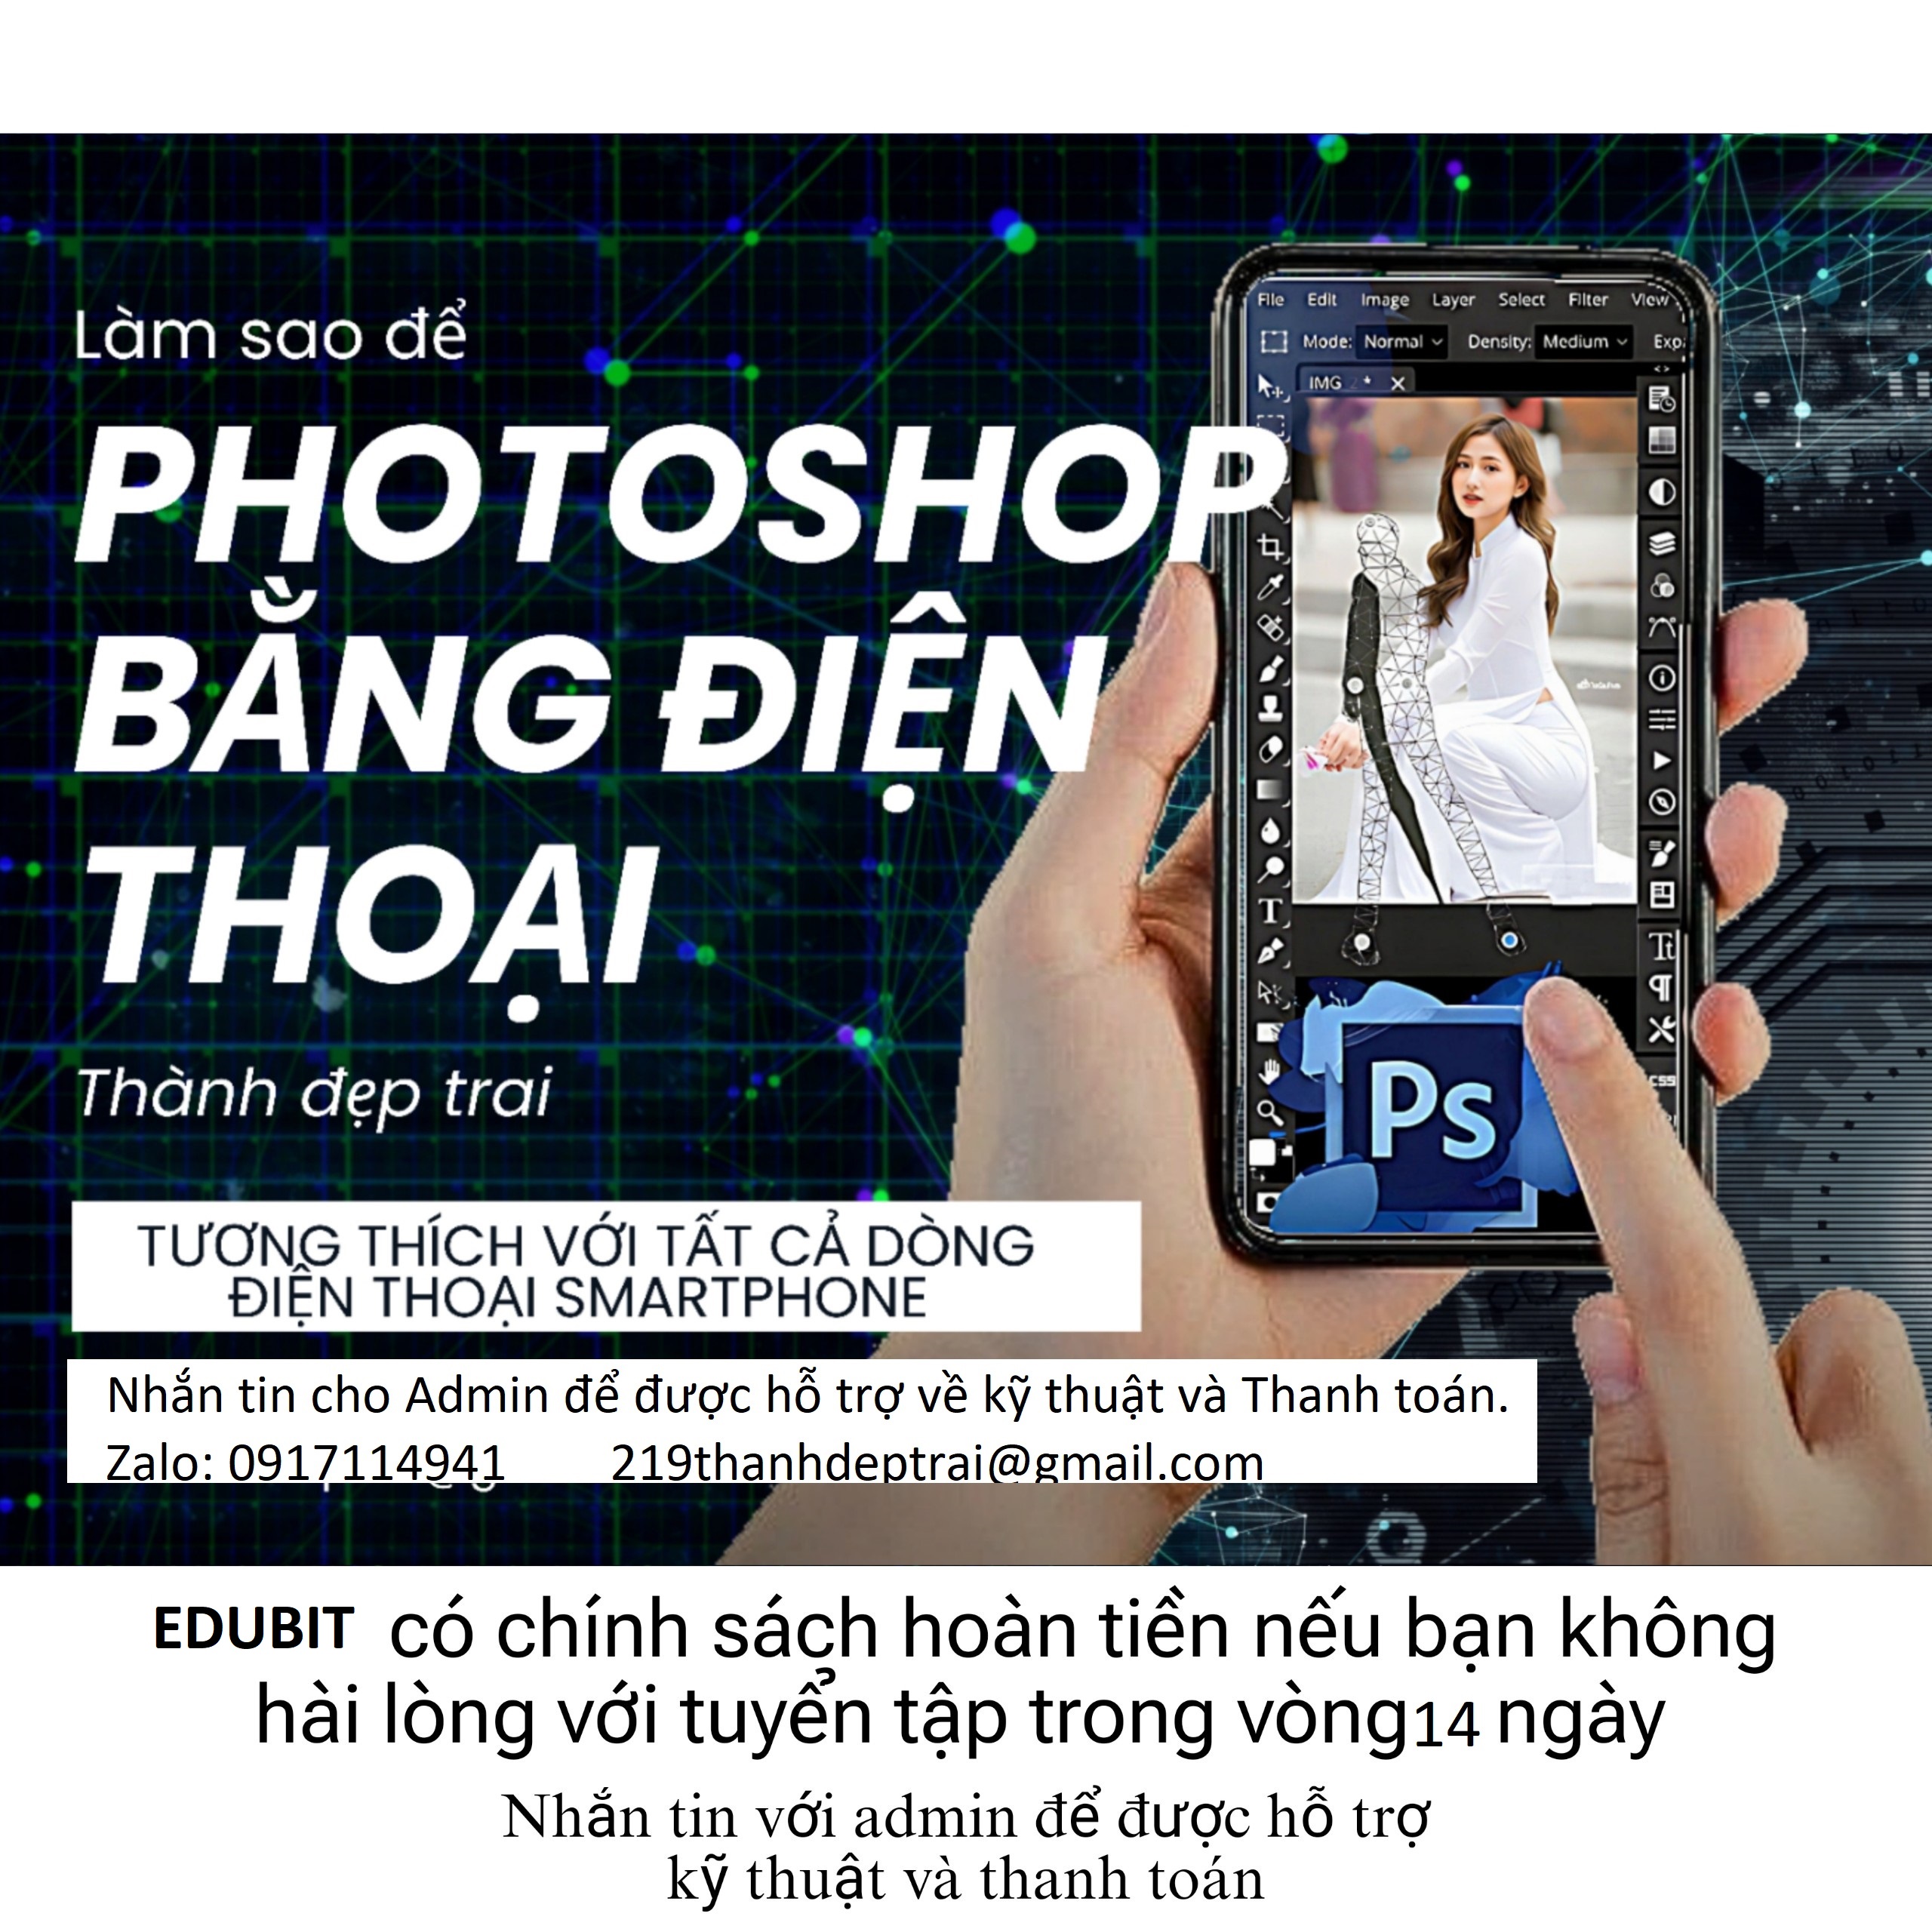 Photoshop bằng điện thoại của bạn